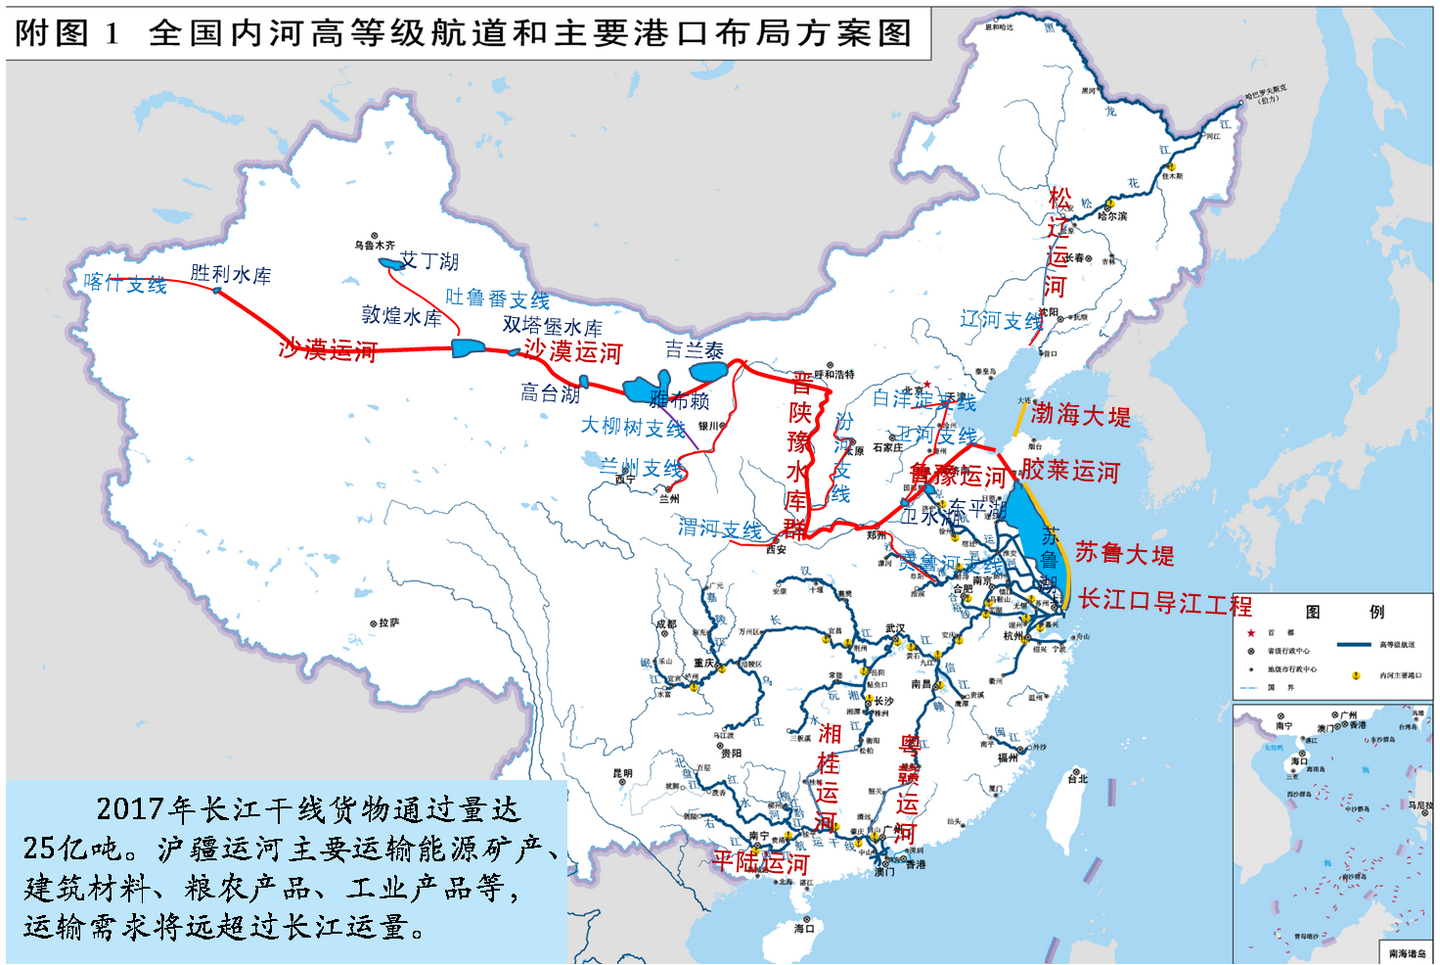 112全国除西藏青海外均可水运联网形成全国水运一张网